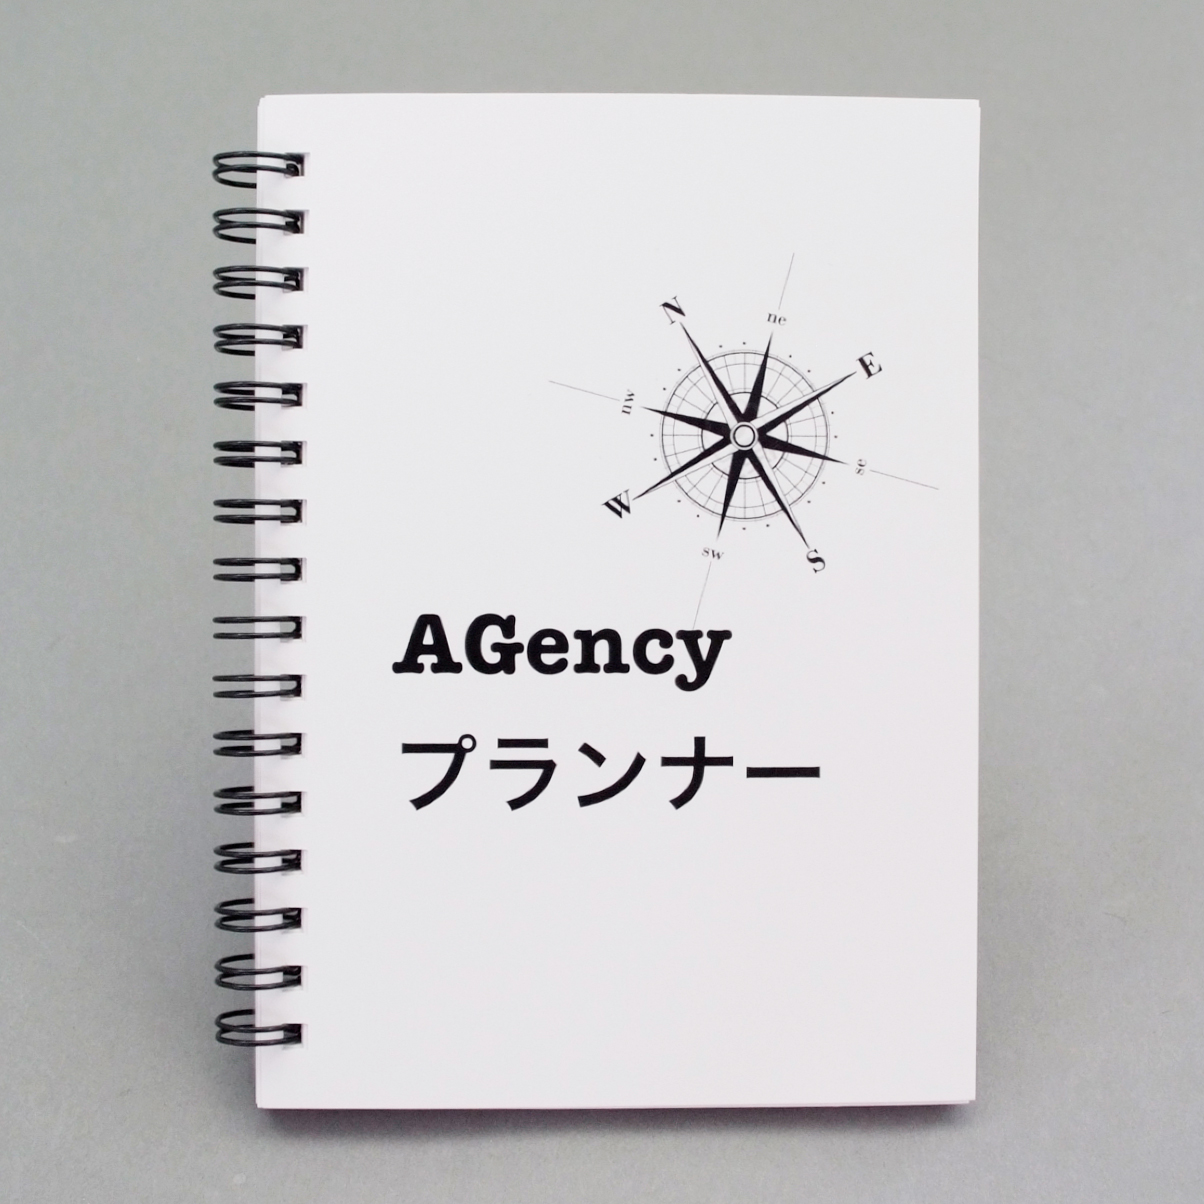 「学習塾AGency 様」製作のオリジナルノート